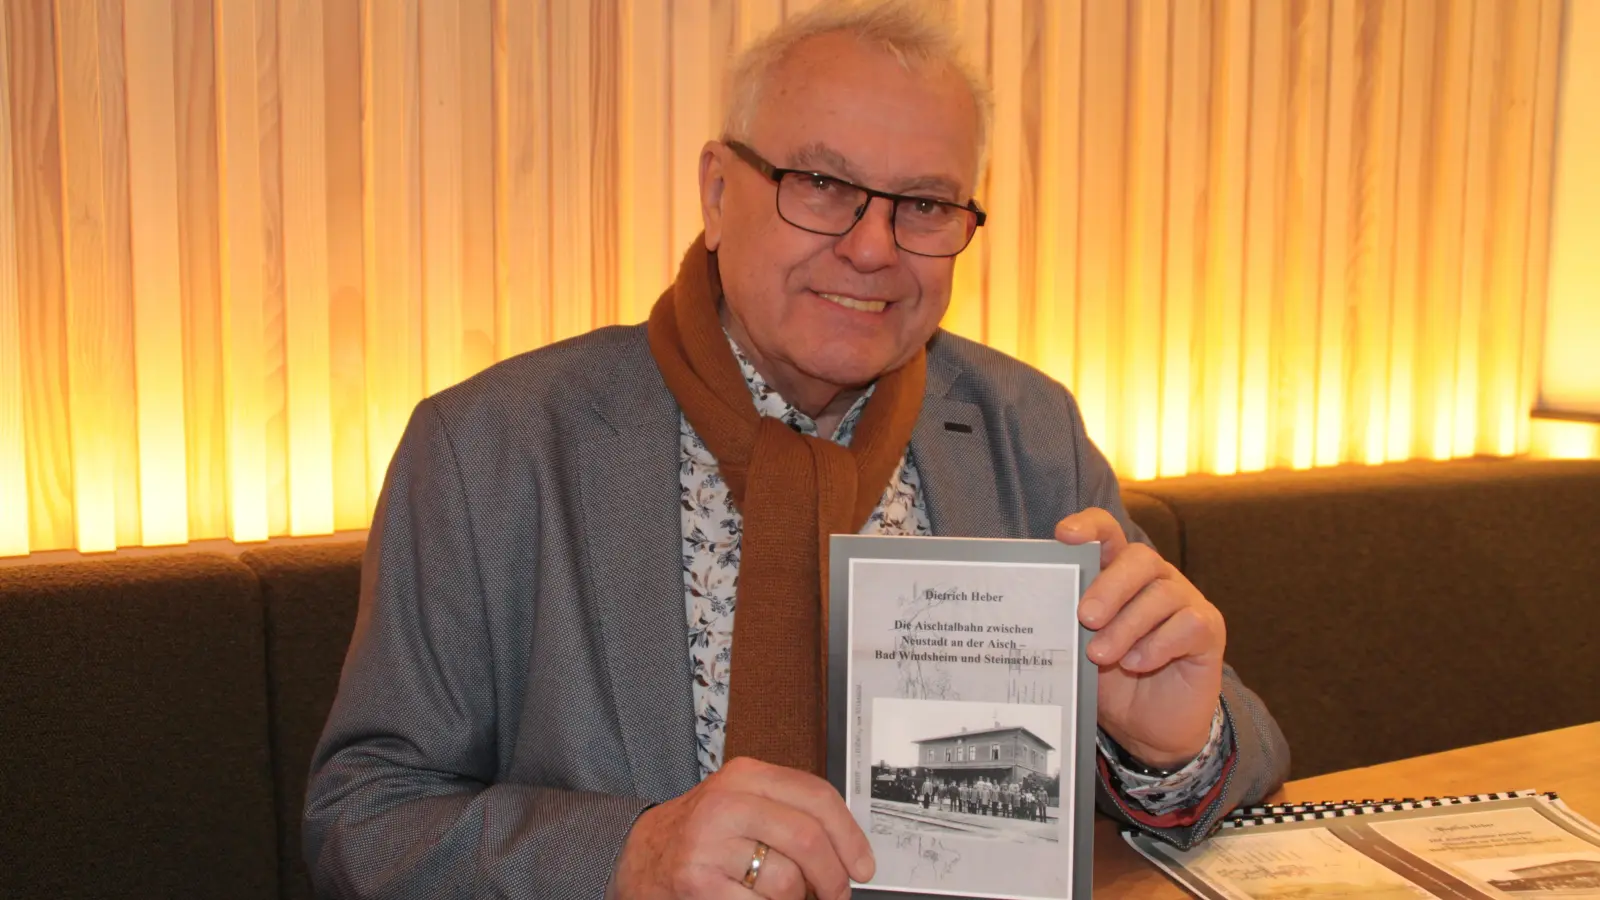 Dietrich Heber hat in Bad Windsheim sein neues Buch „Die Aischtalbahn zwischen Neustadt an der Aisch-Bad Windsheim und Steinach/Ens“ vorgestellt. (Foto: Hans-Bernd Glanz)